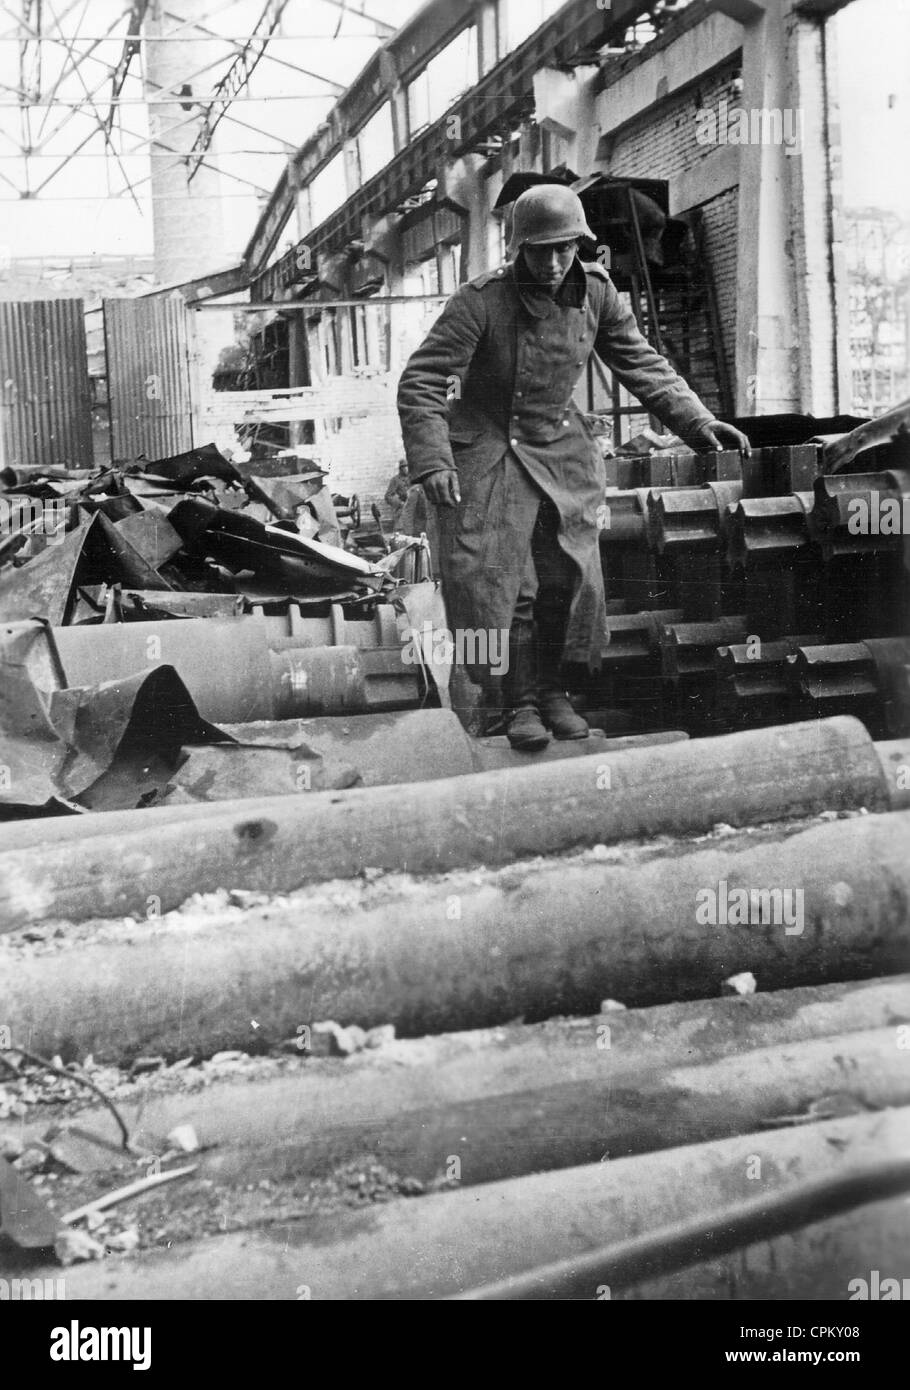 Soldat allemand dans une usine en ruine à Stalingrad, 1942 Banque D'Images